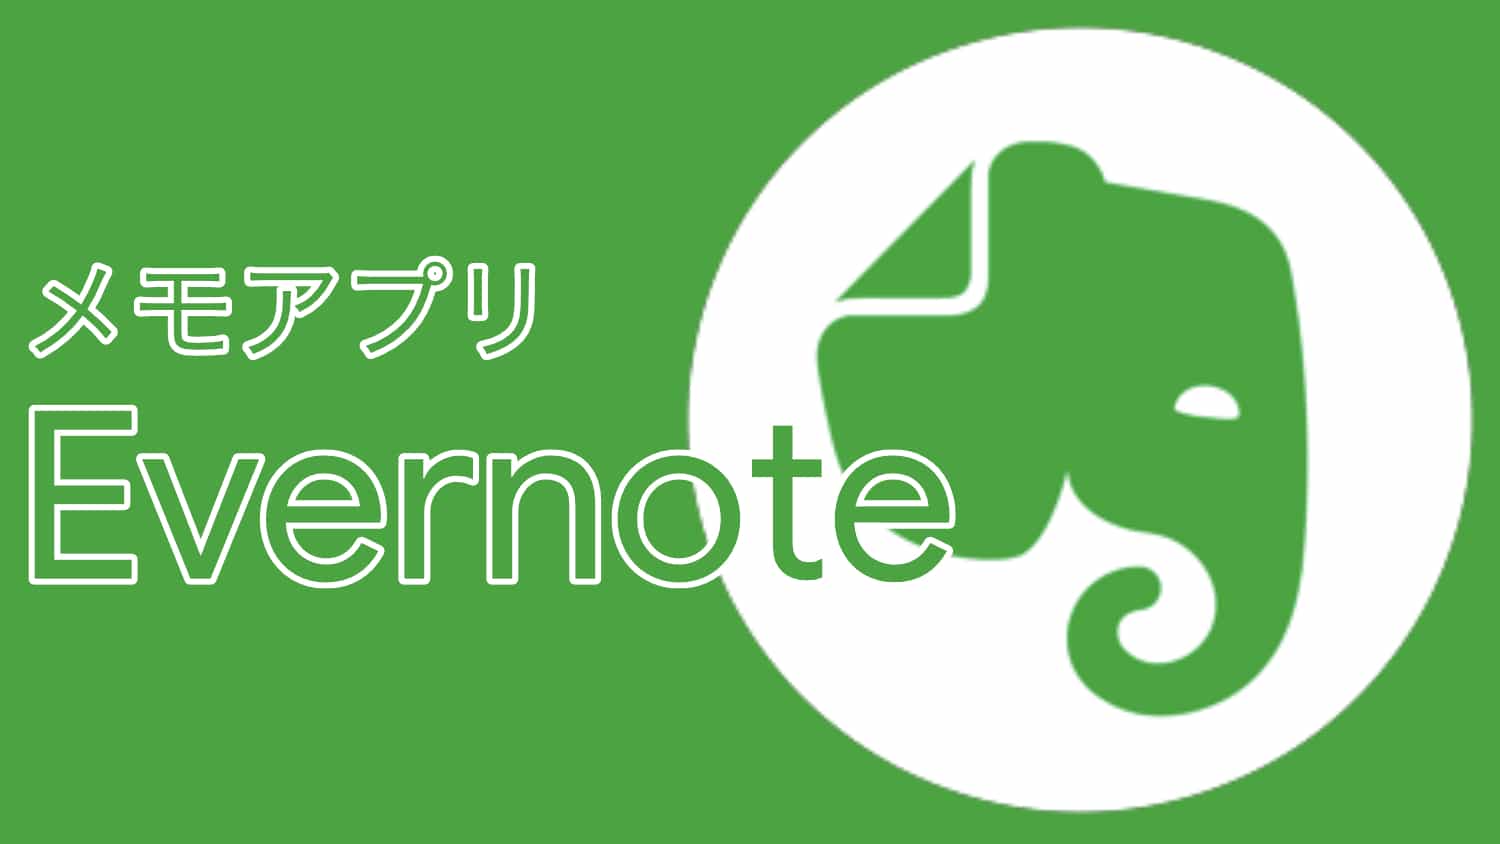 メモアプリは今までどおり Evernote を使うことにしました